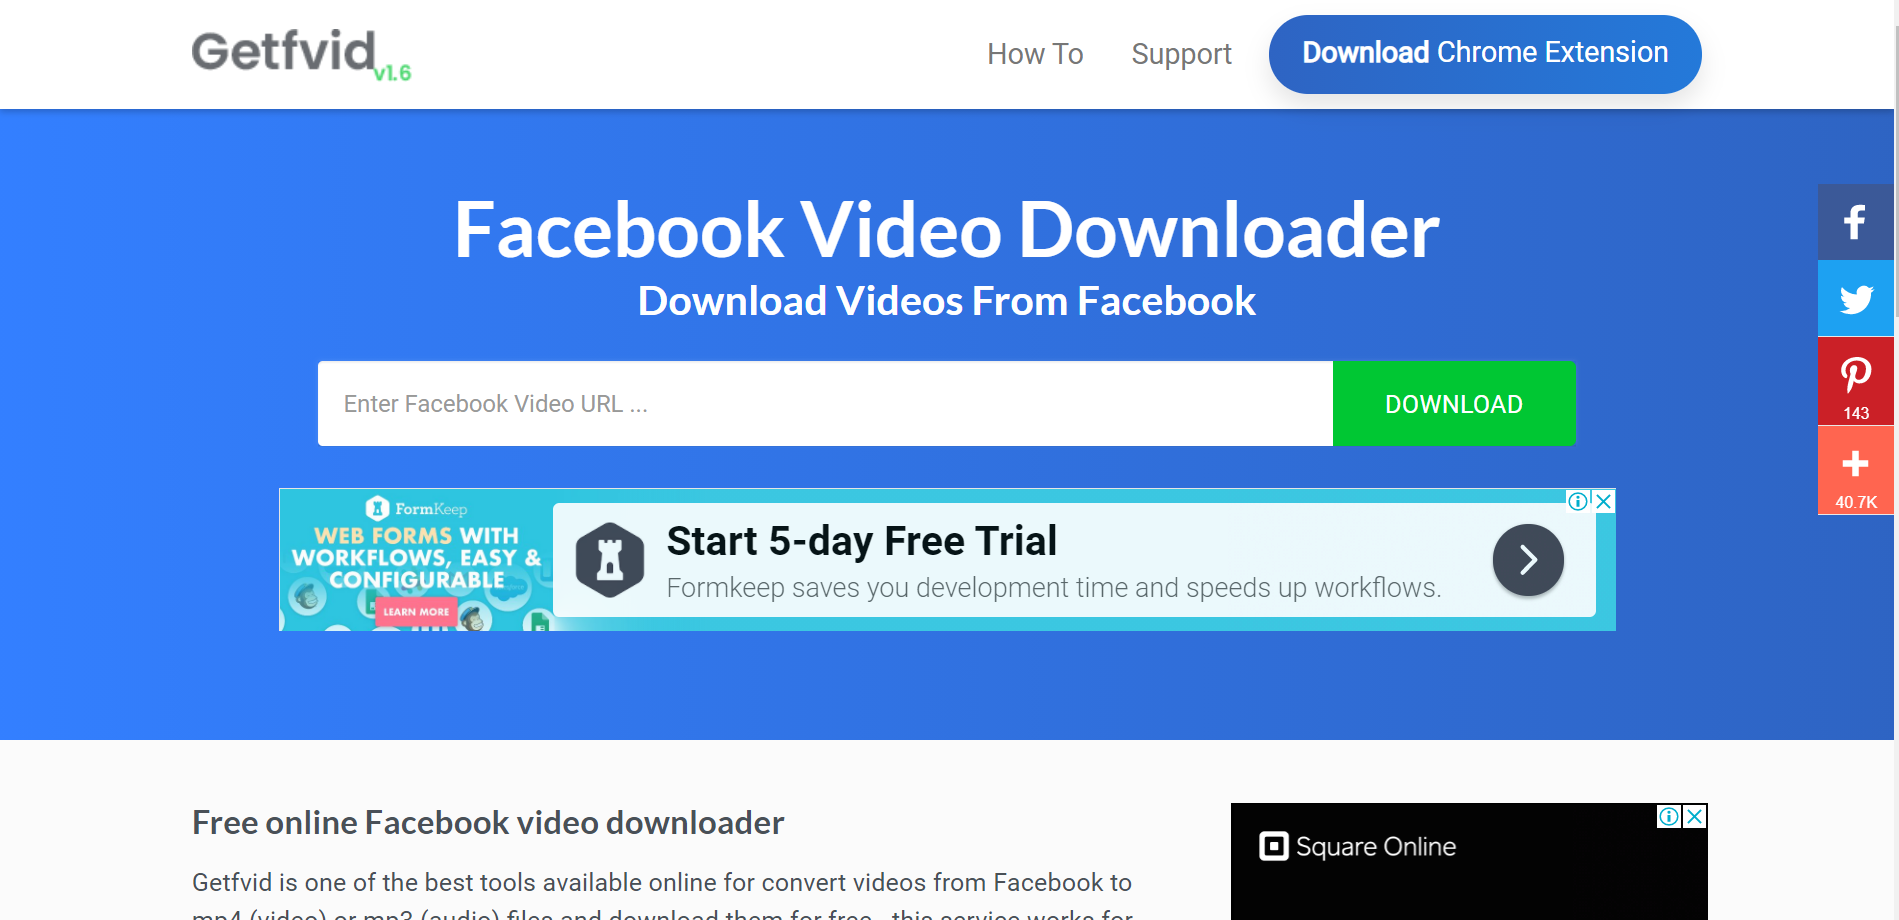 Facebook Video Downloader 6.20.3 for mac instal free